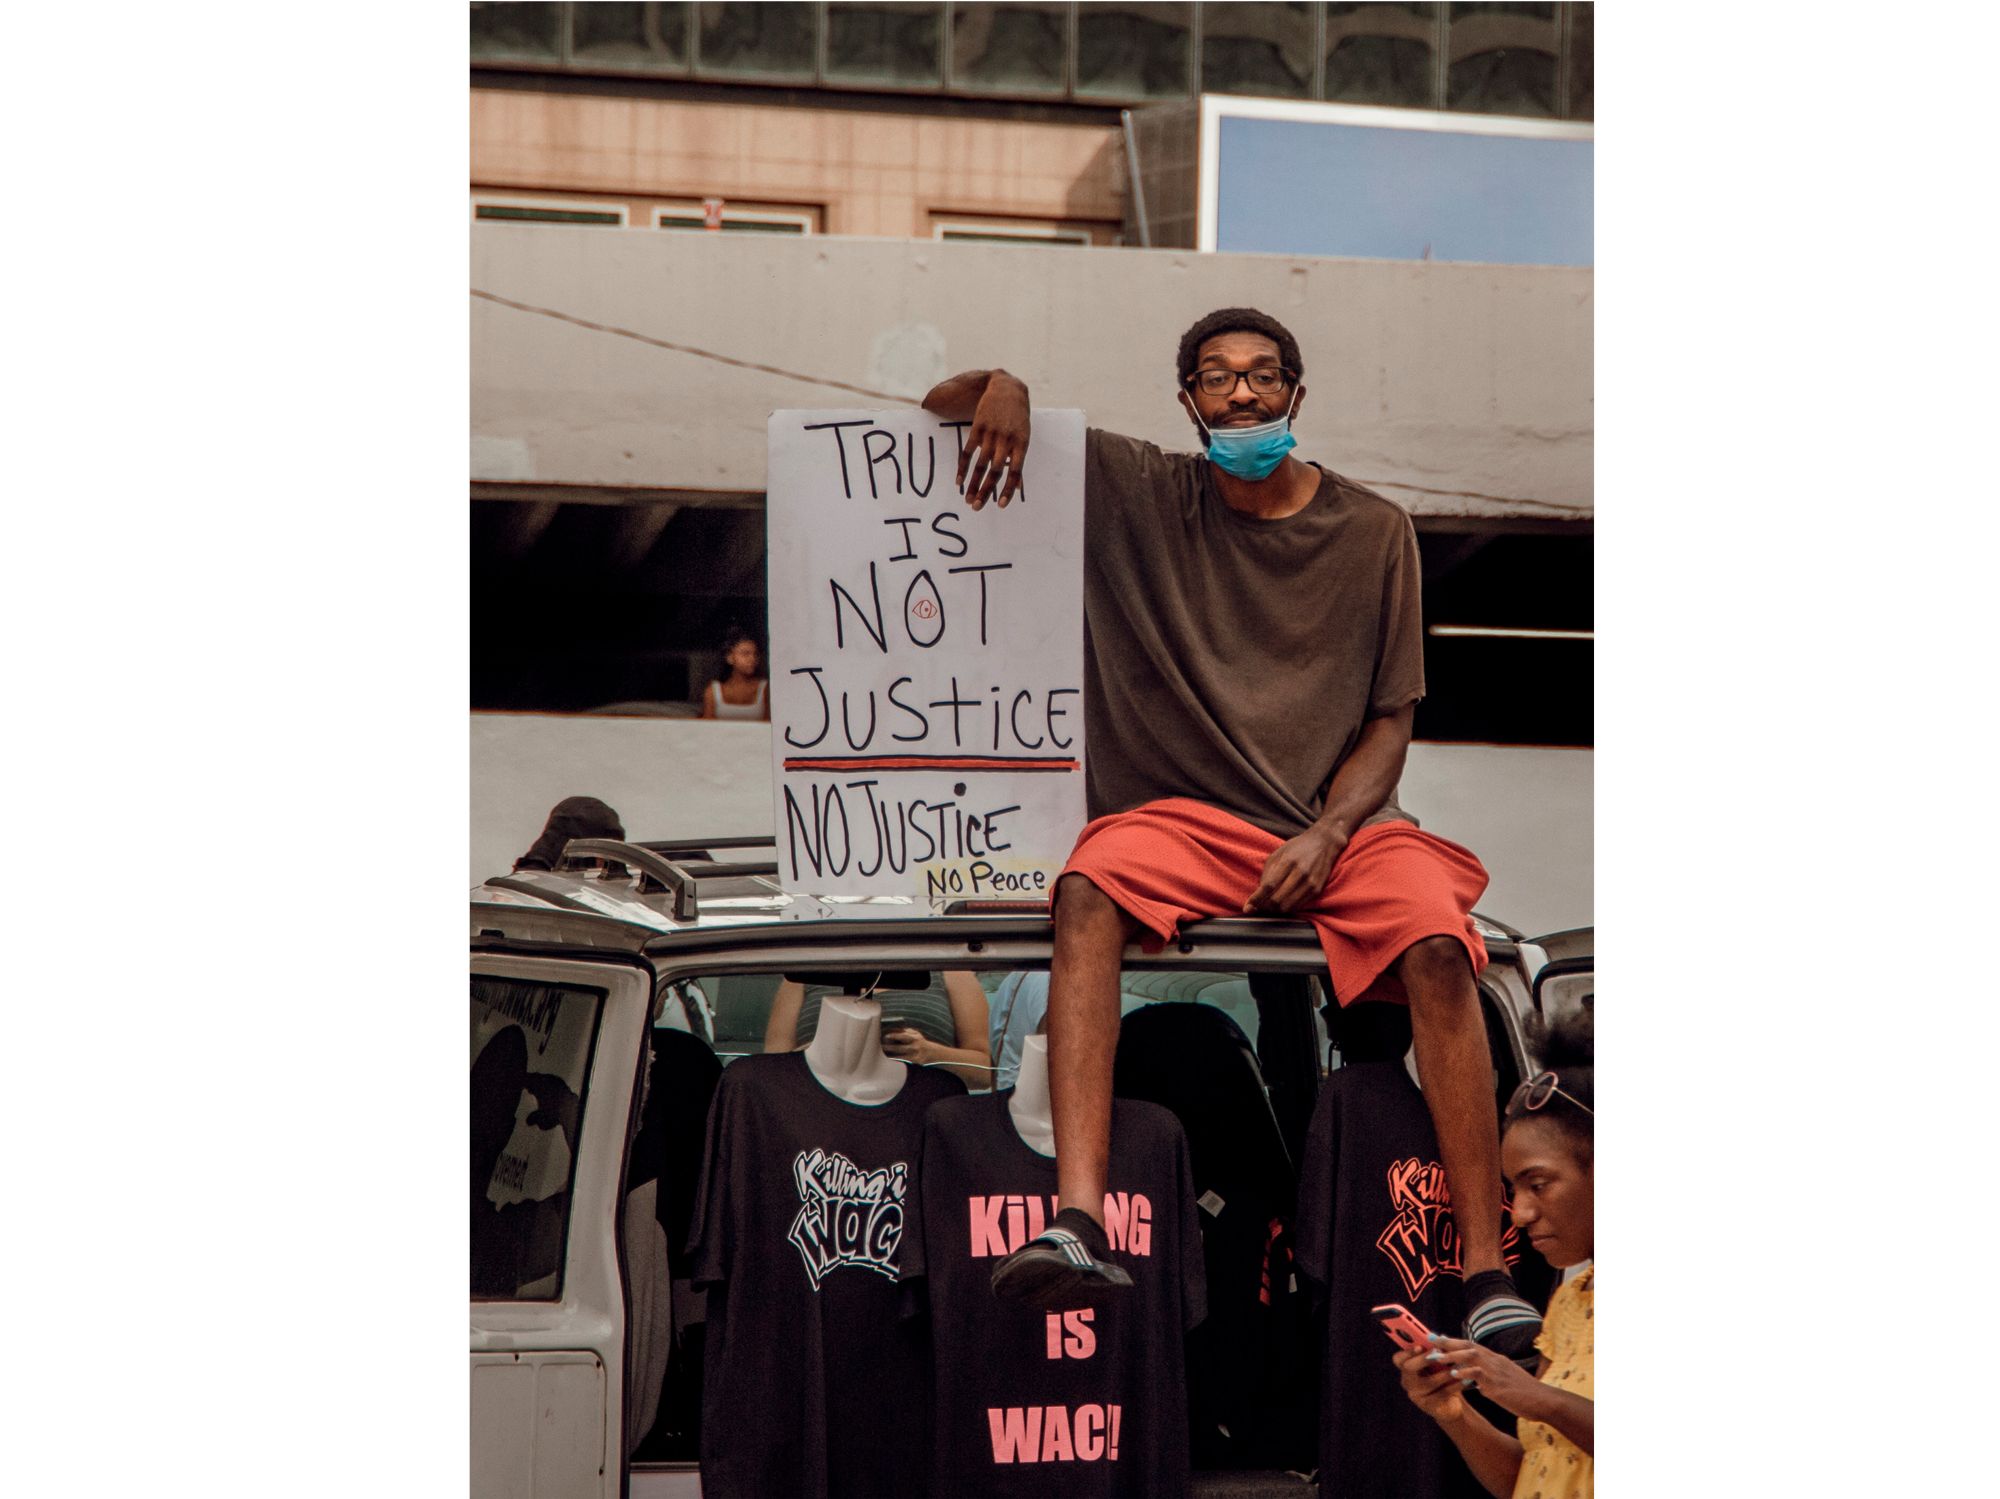 Протестующий с плакатом «Правда — не правосудие, нет правосудия — нет мира», Атланта, США / Фото: Greg Keelen, Unsplash